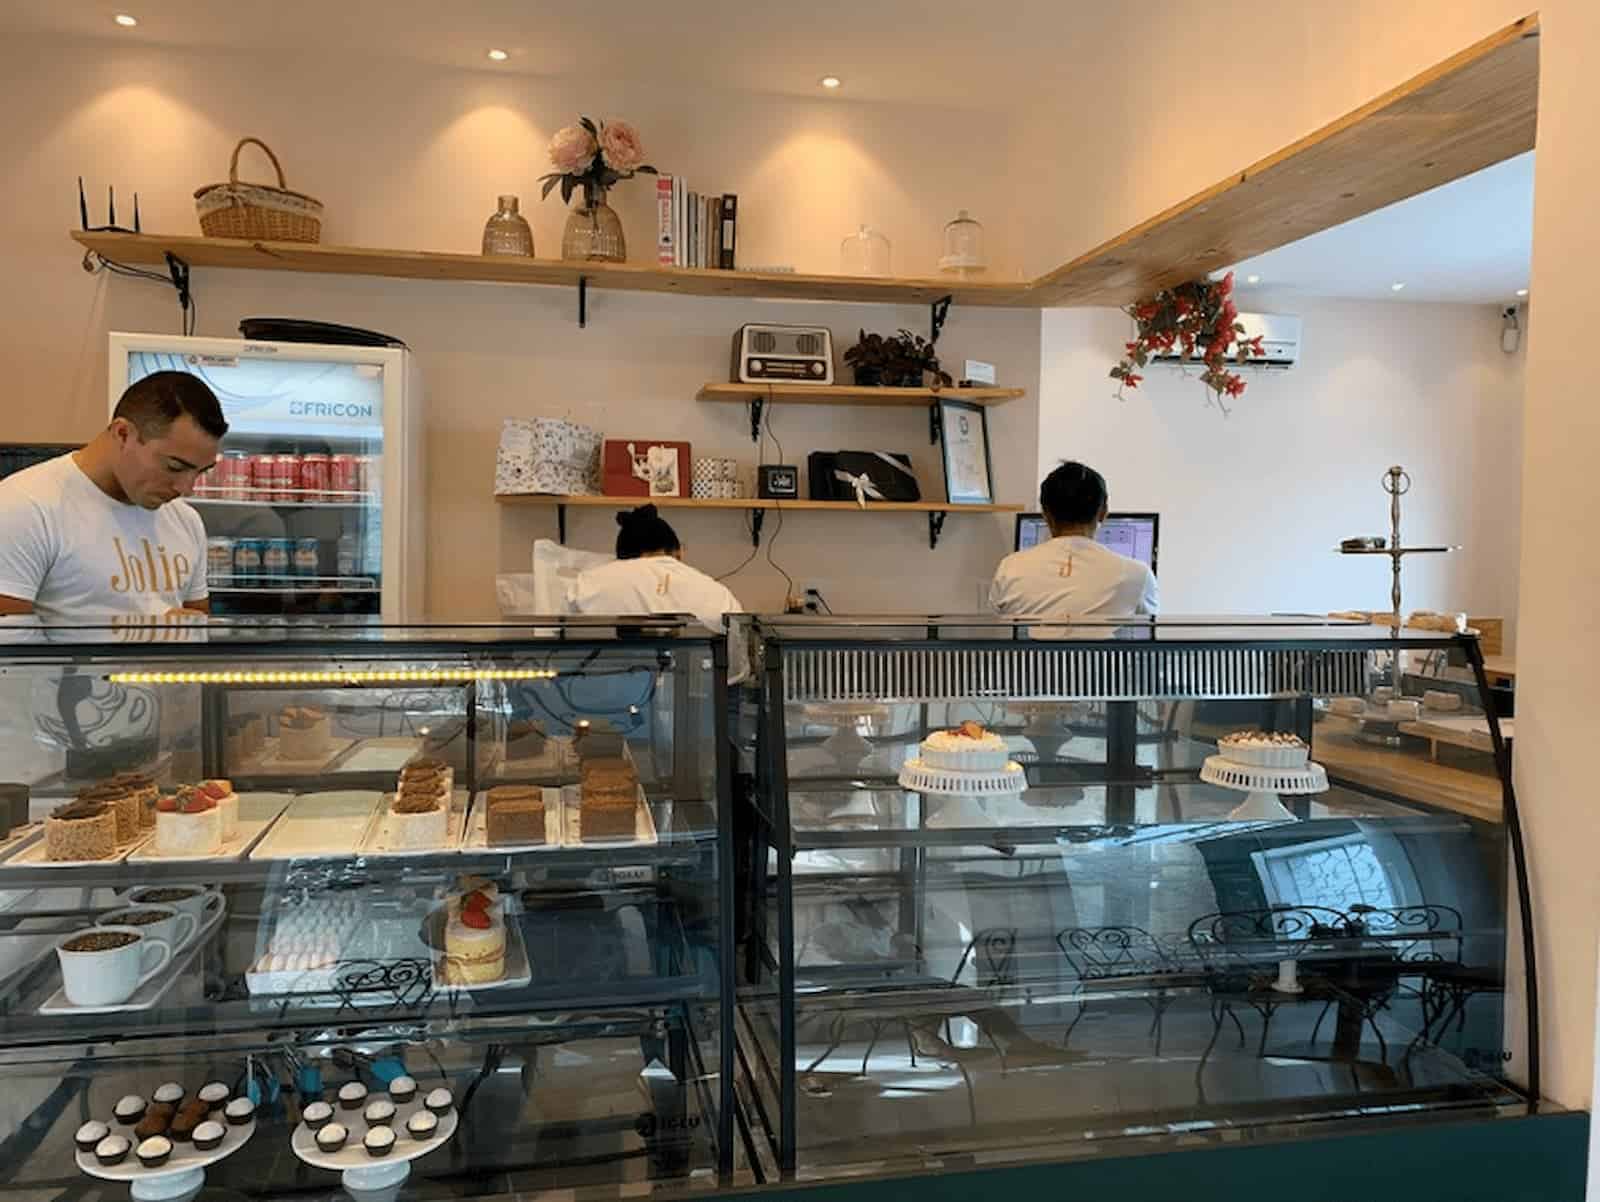 Jolie Café e Pâtisserie